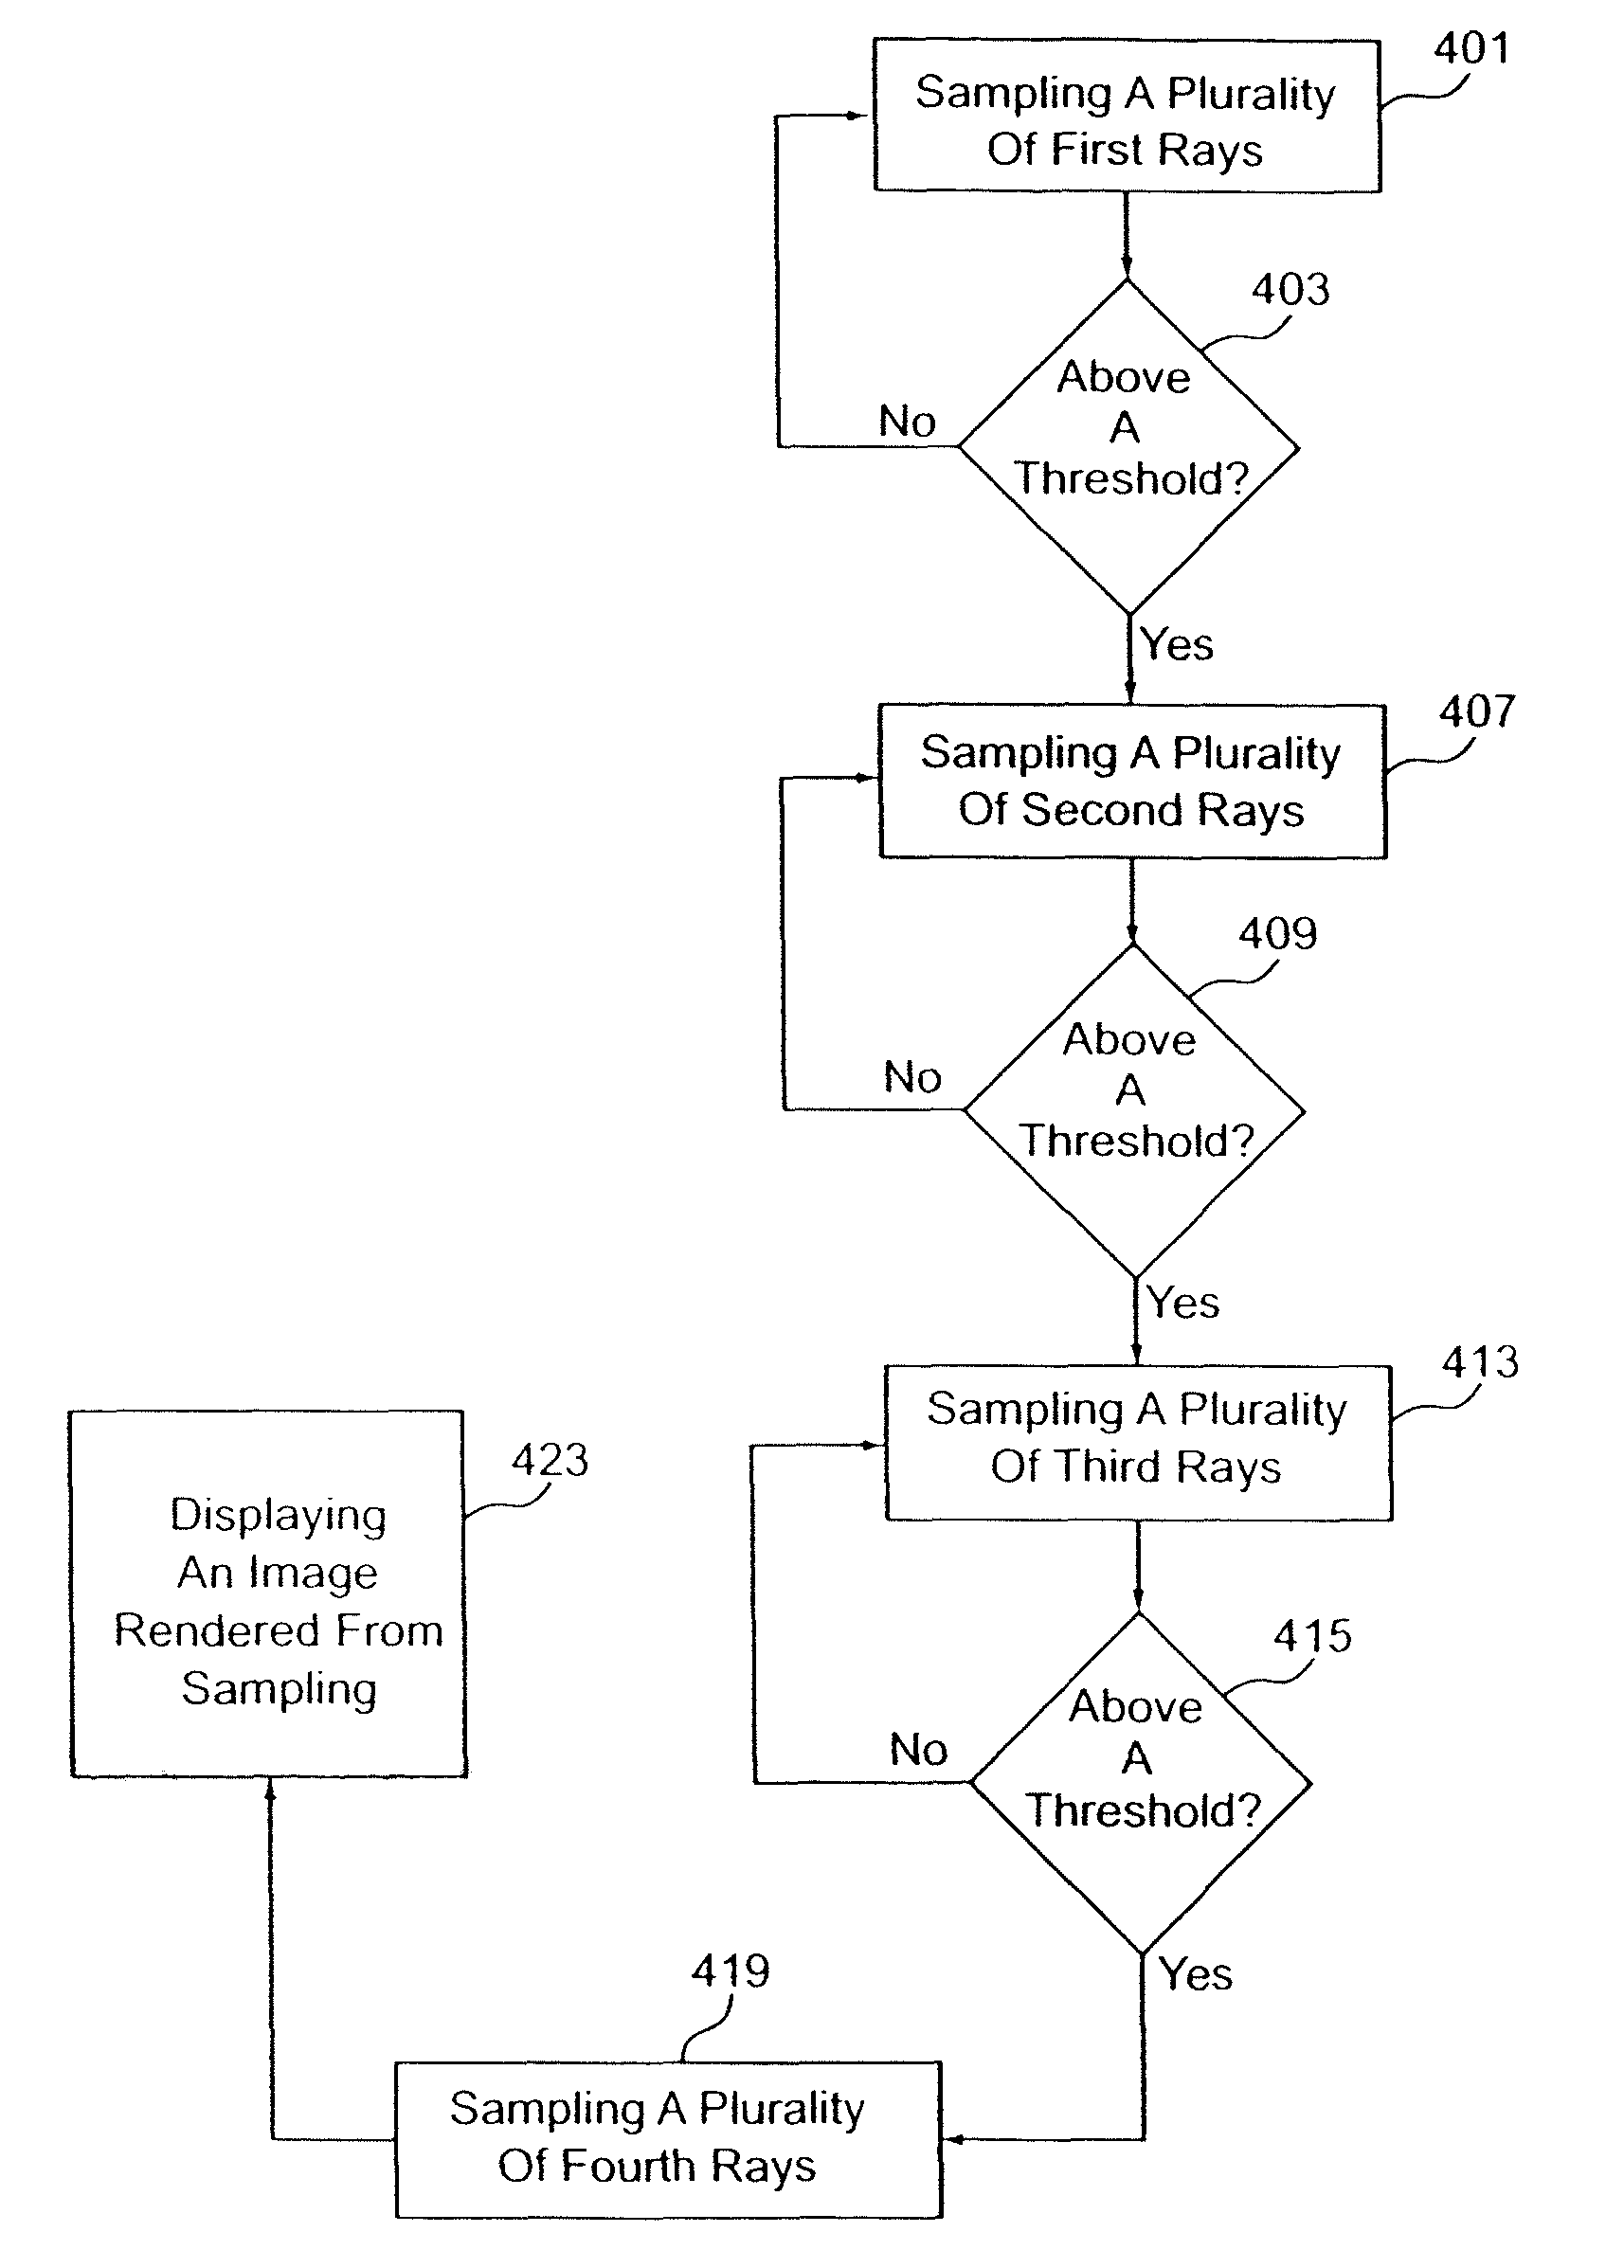 Volume rendering using N-pass sampling